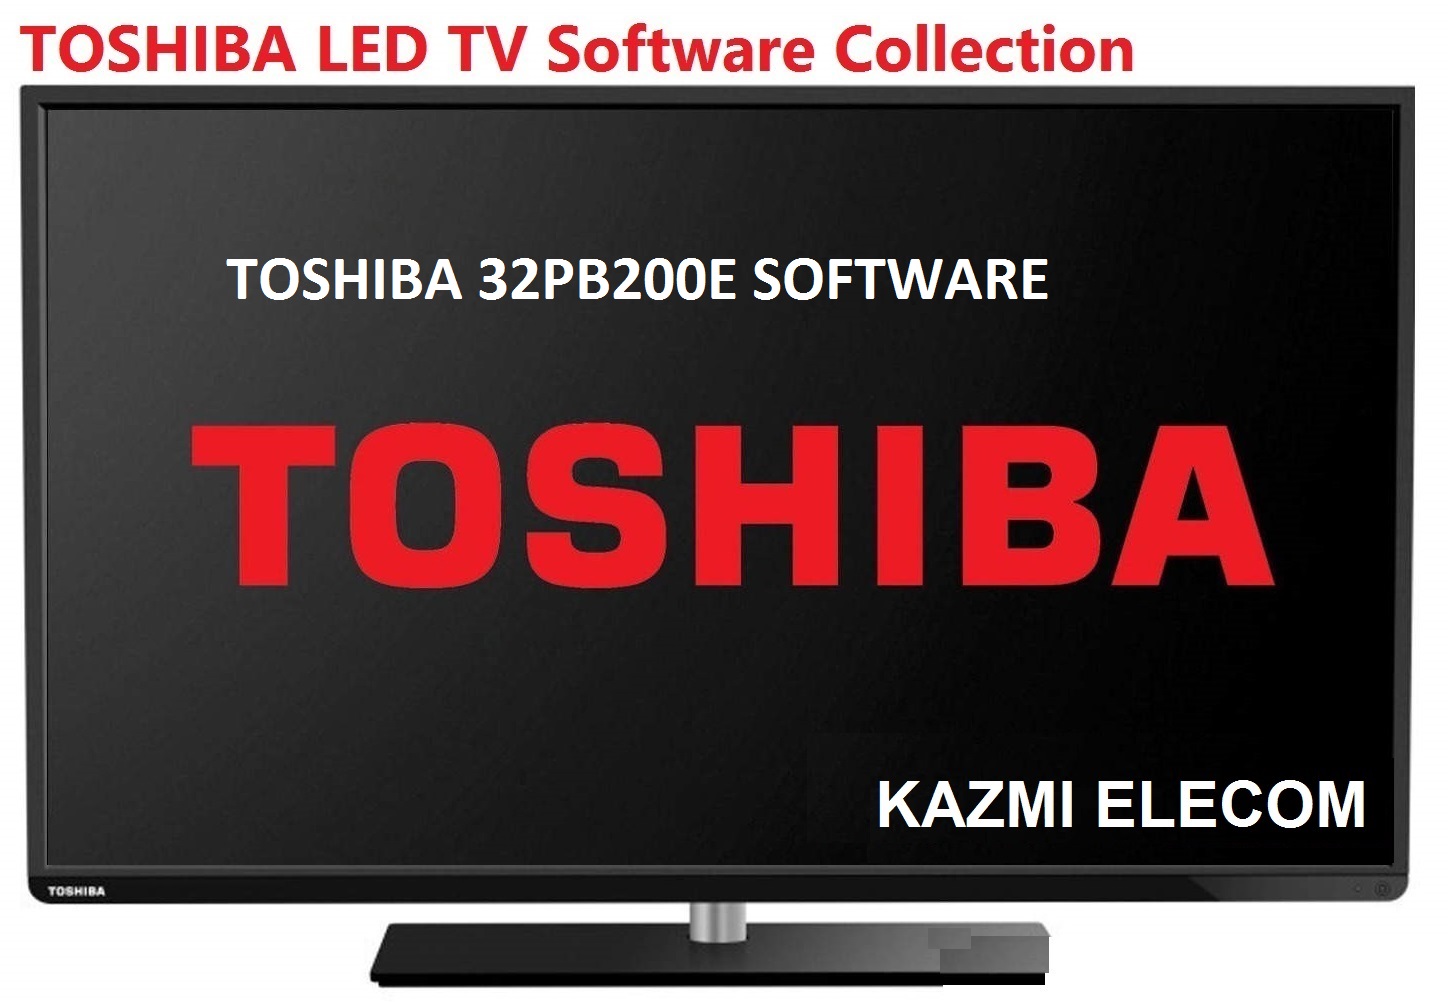 Toshiba 32Pb200E